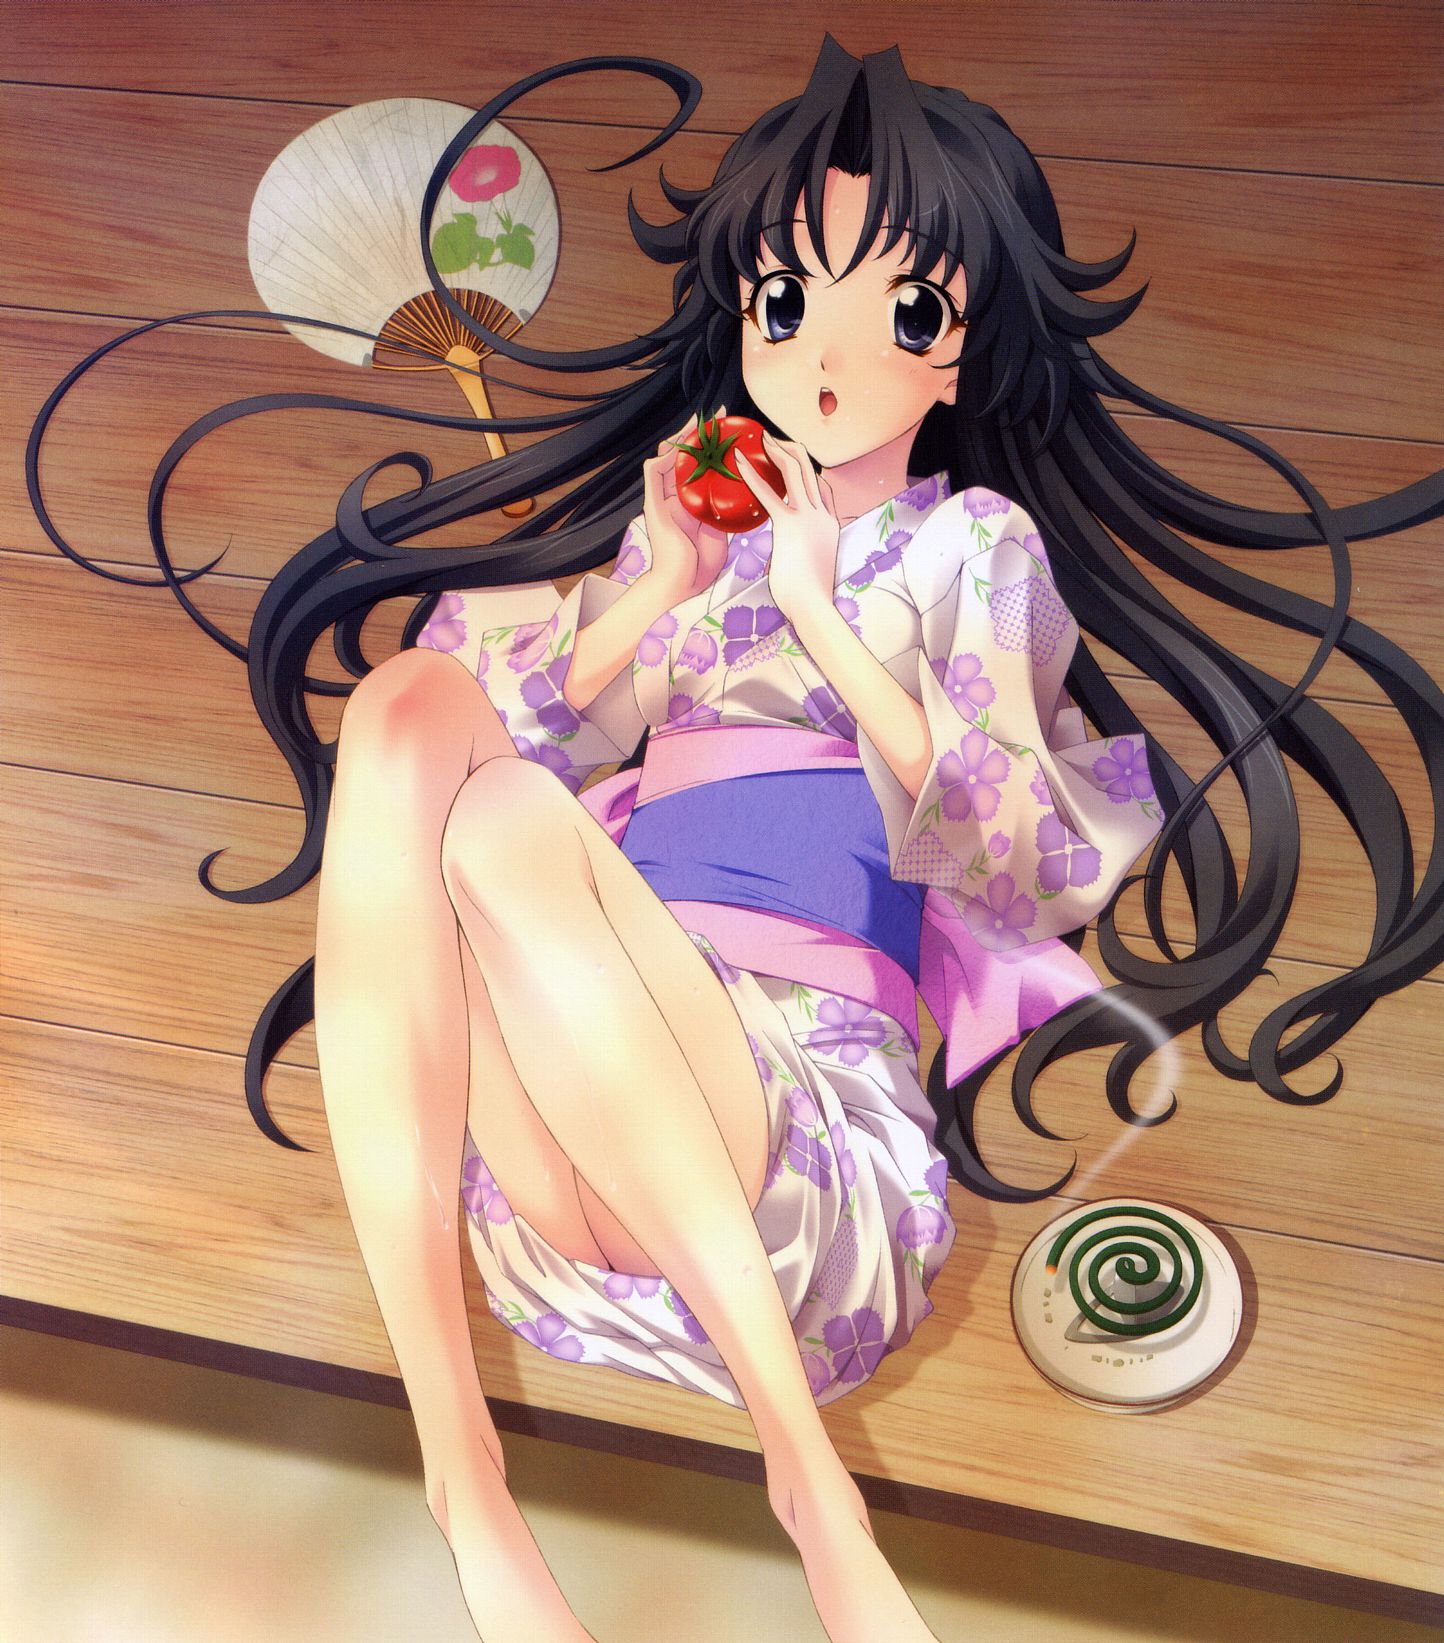 Cute kimono! Erotic image, please w 11 18